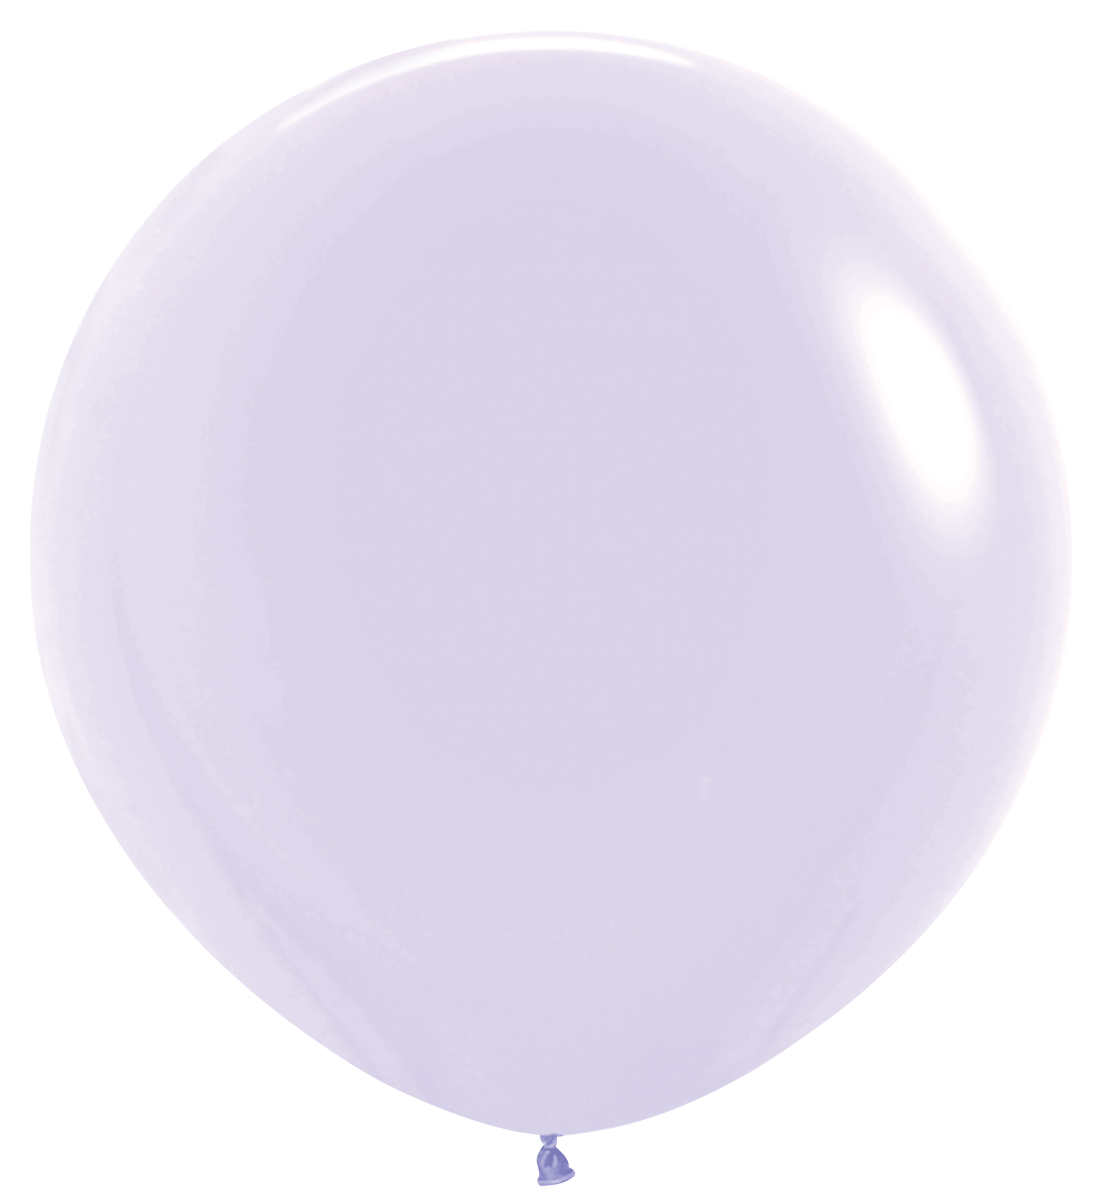 Sempertex Pastel Matte Round Latex Balloons | All Sizes